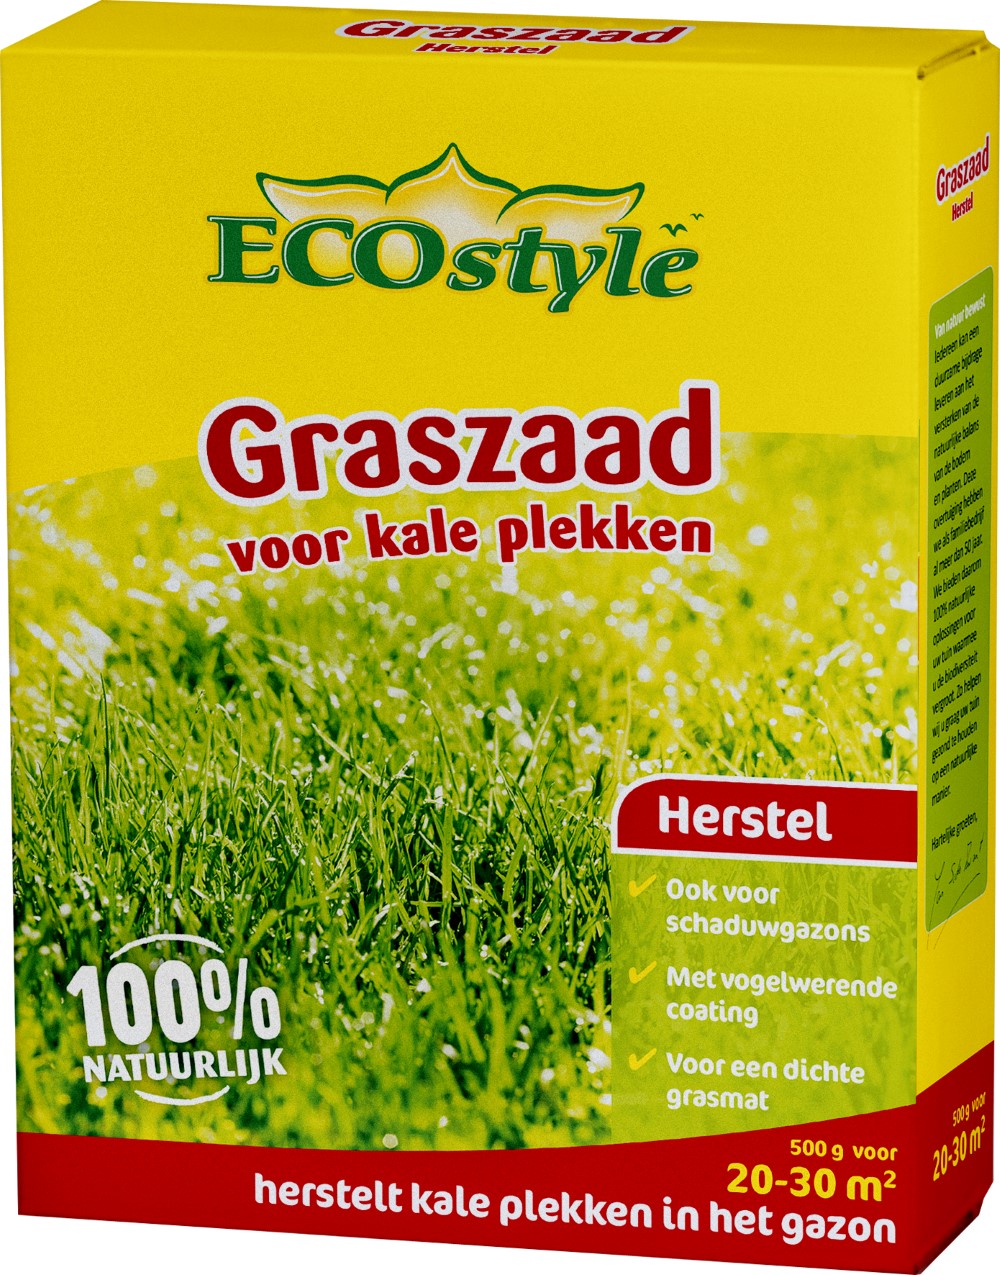 Afbeelding Ecostyle Graszaad-Extra 30 m2 - Graszaden - 500 g door Haxo.nl